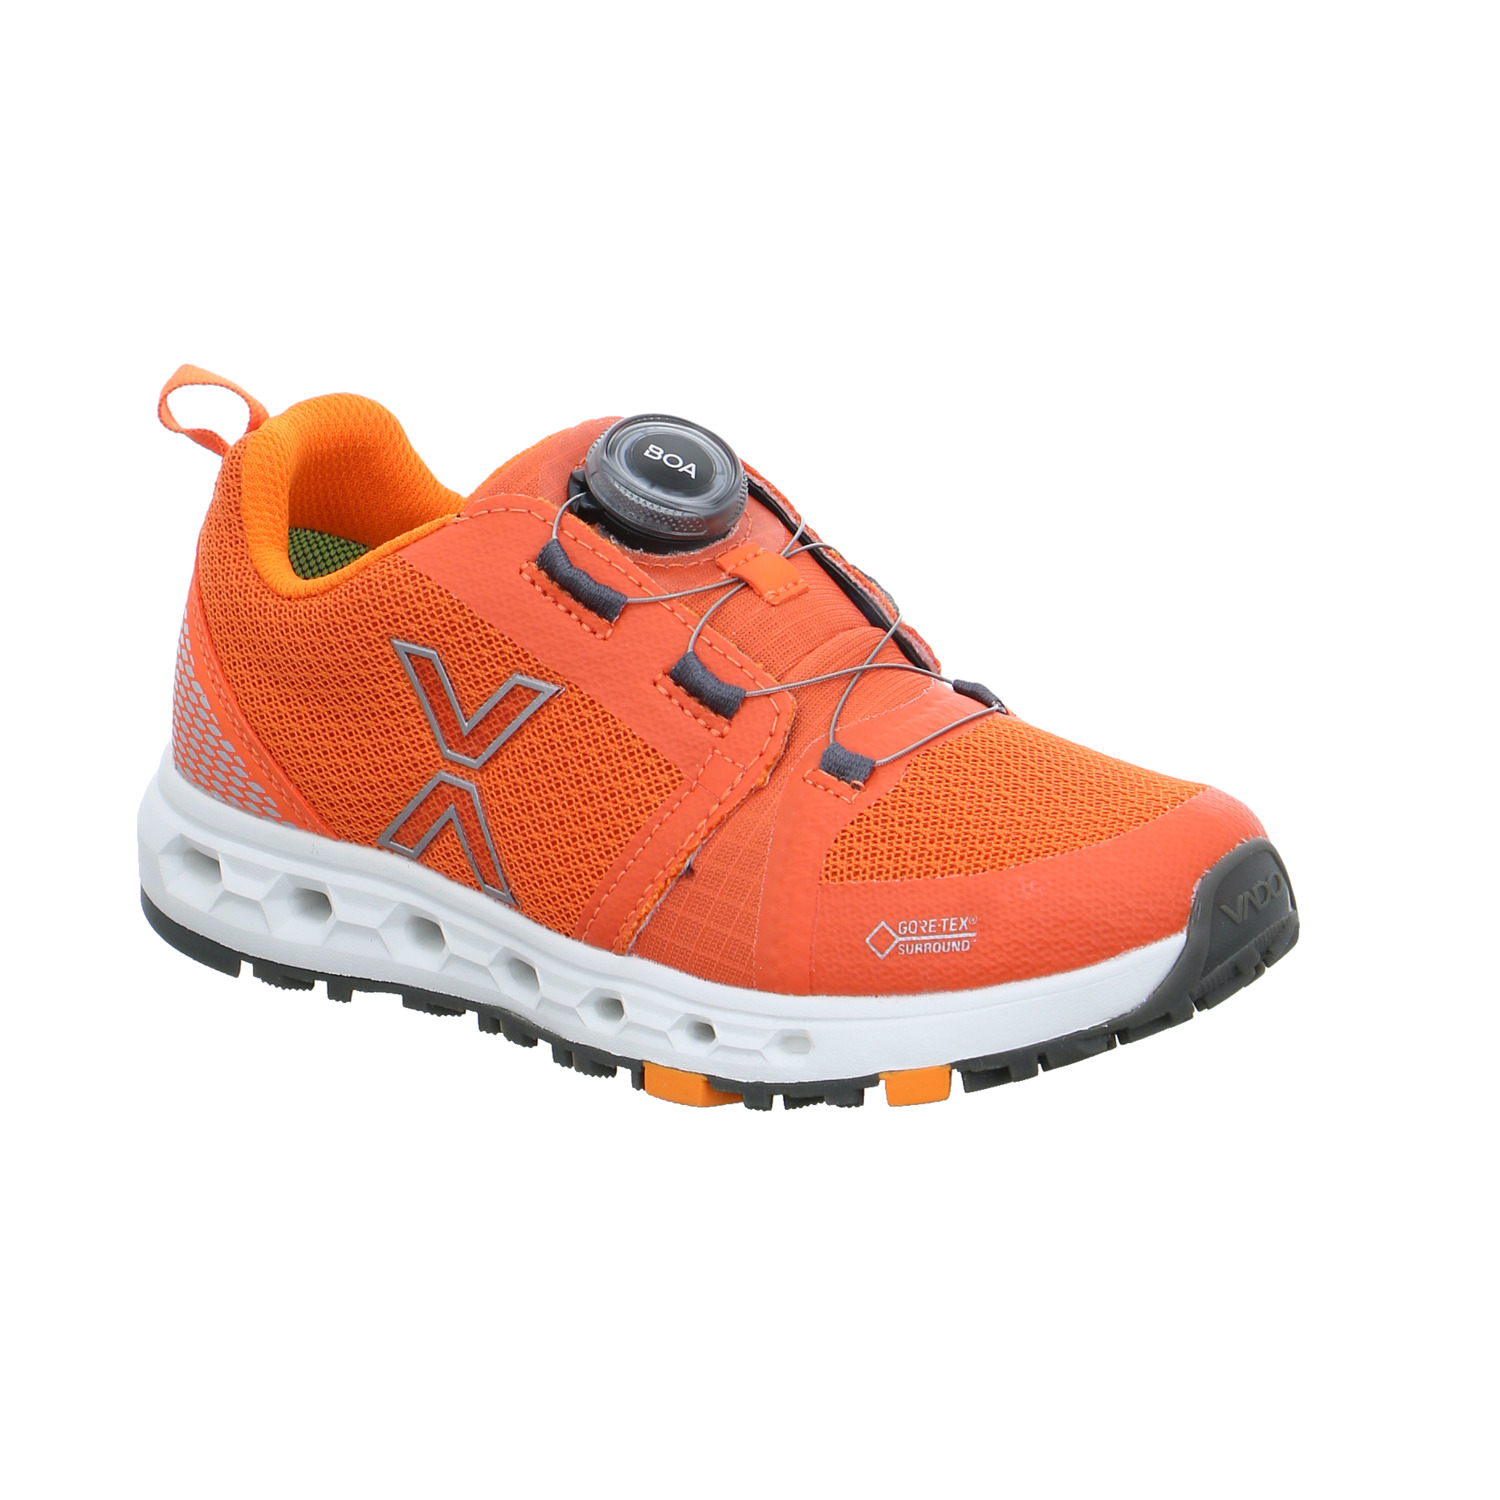 VADO Jungen-Halbschuh Binder Orange Textil Sneaker Outdoor